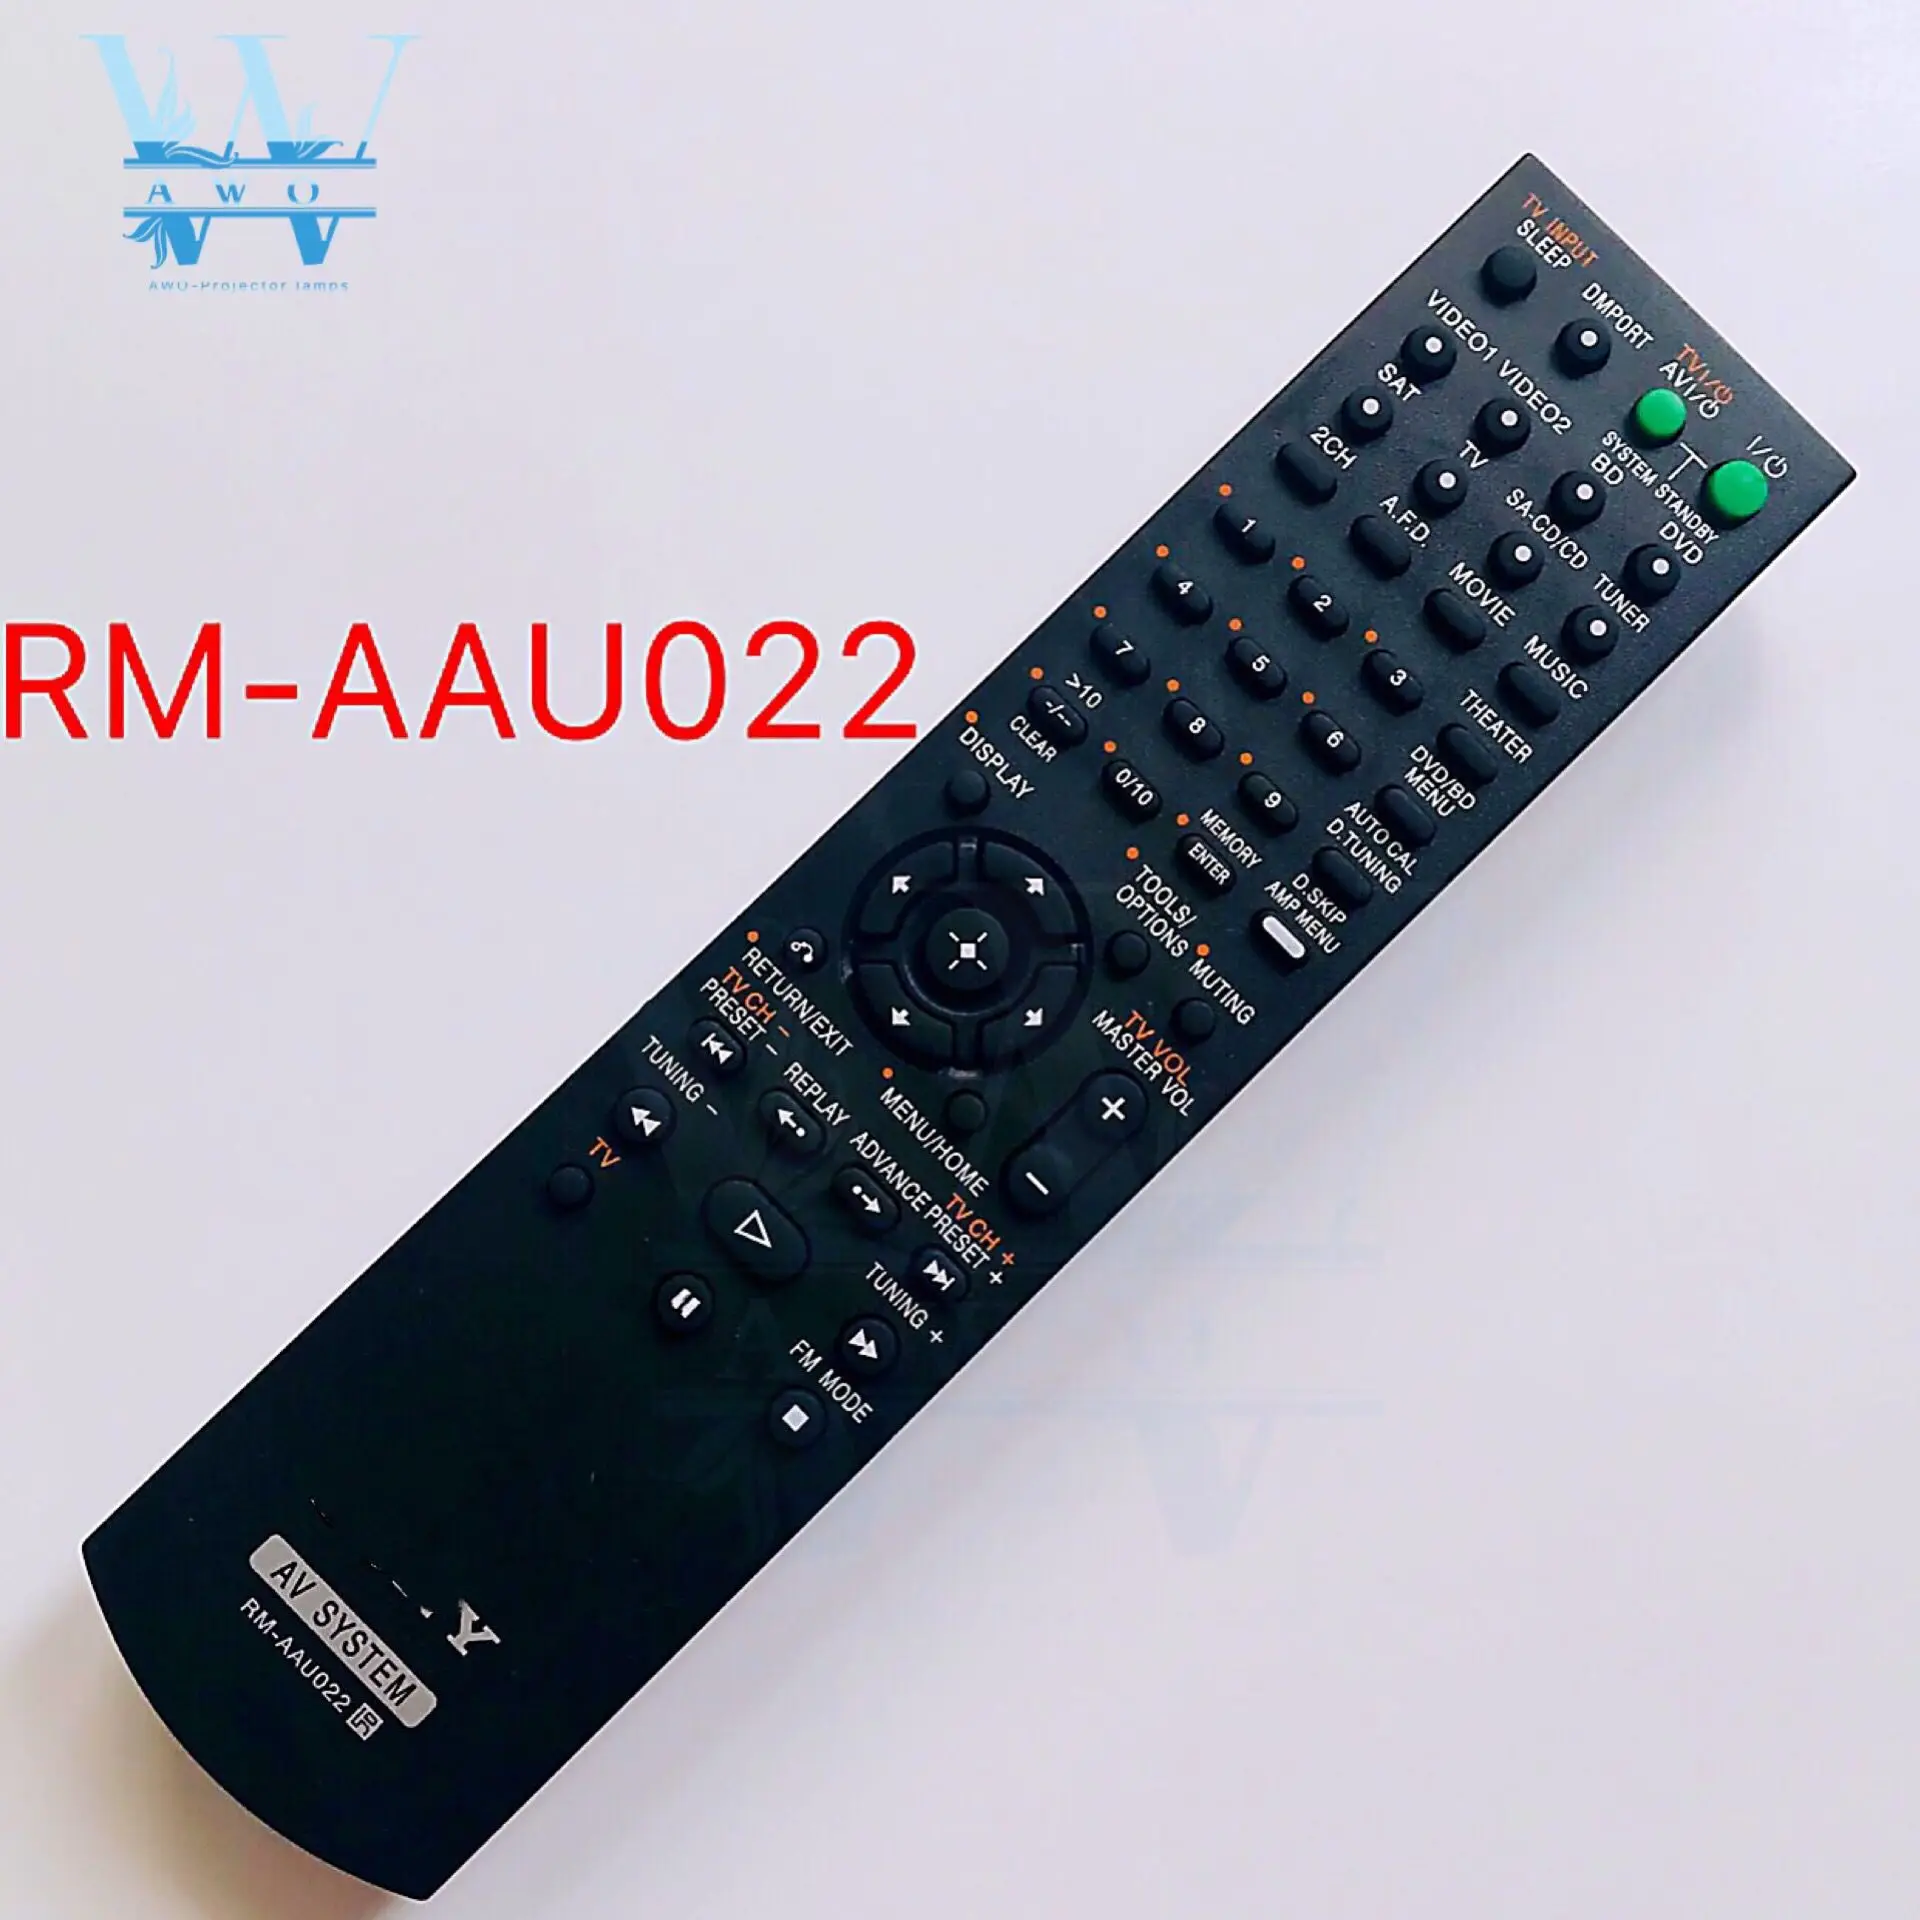 RM-AAU022 дистанционного Управление для sony RM-AAU020 RM-AAU021 проектор для домашнего кинотеатра AV Системы STR-KS2300 STR-DG520 HT-SF2300 SS2300 RM-AAU029